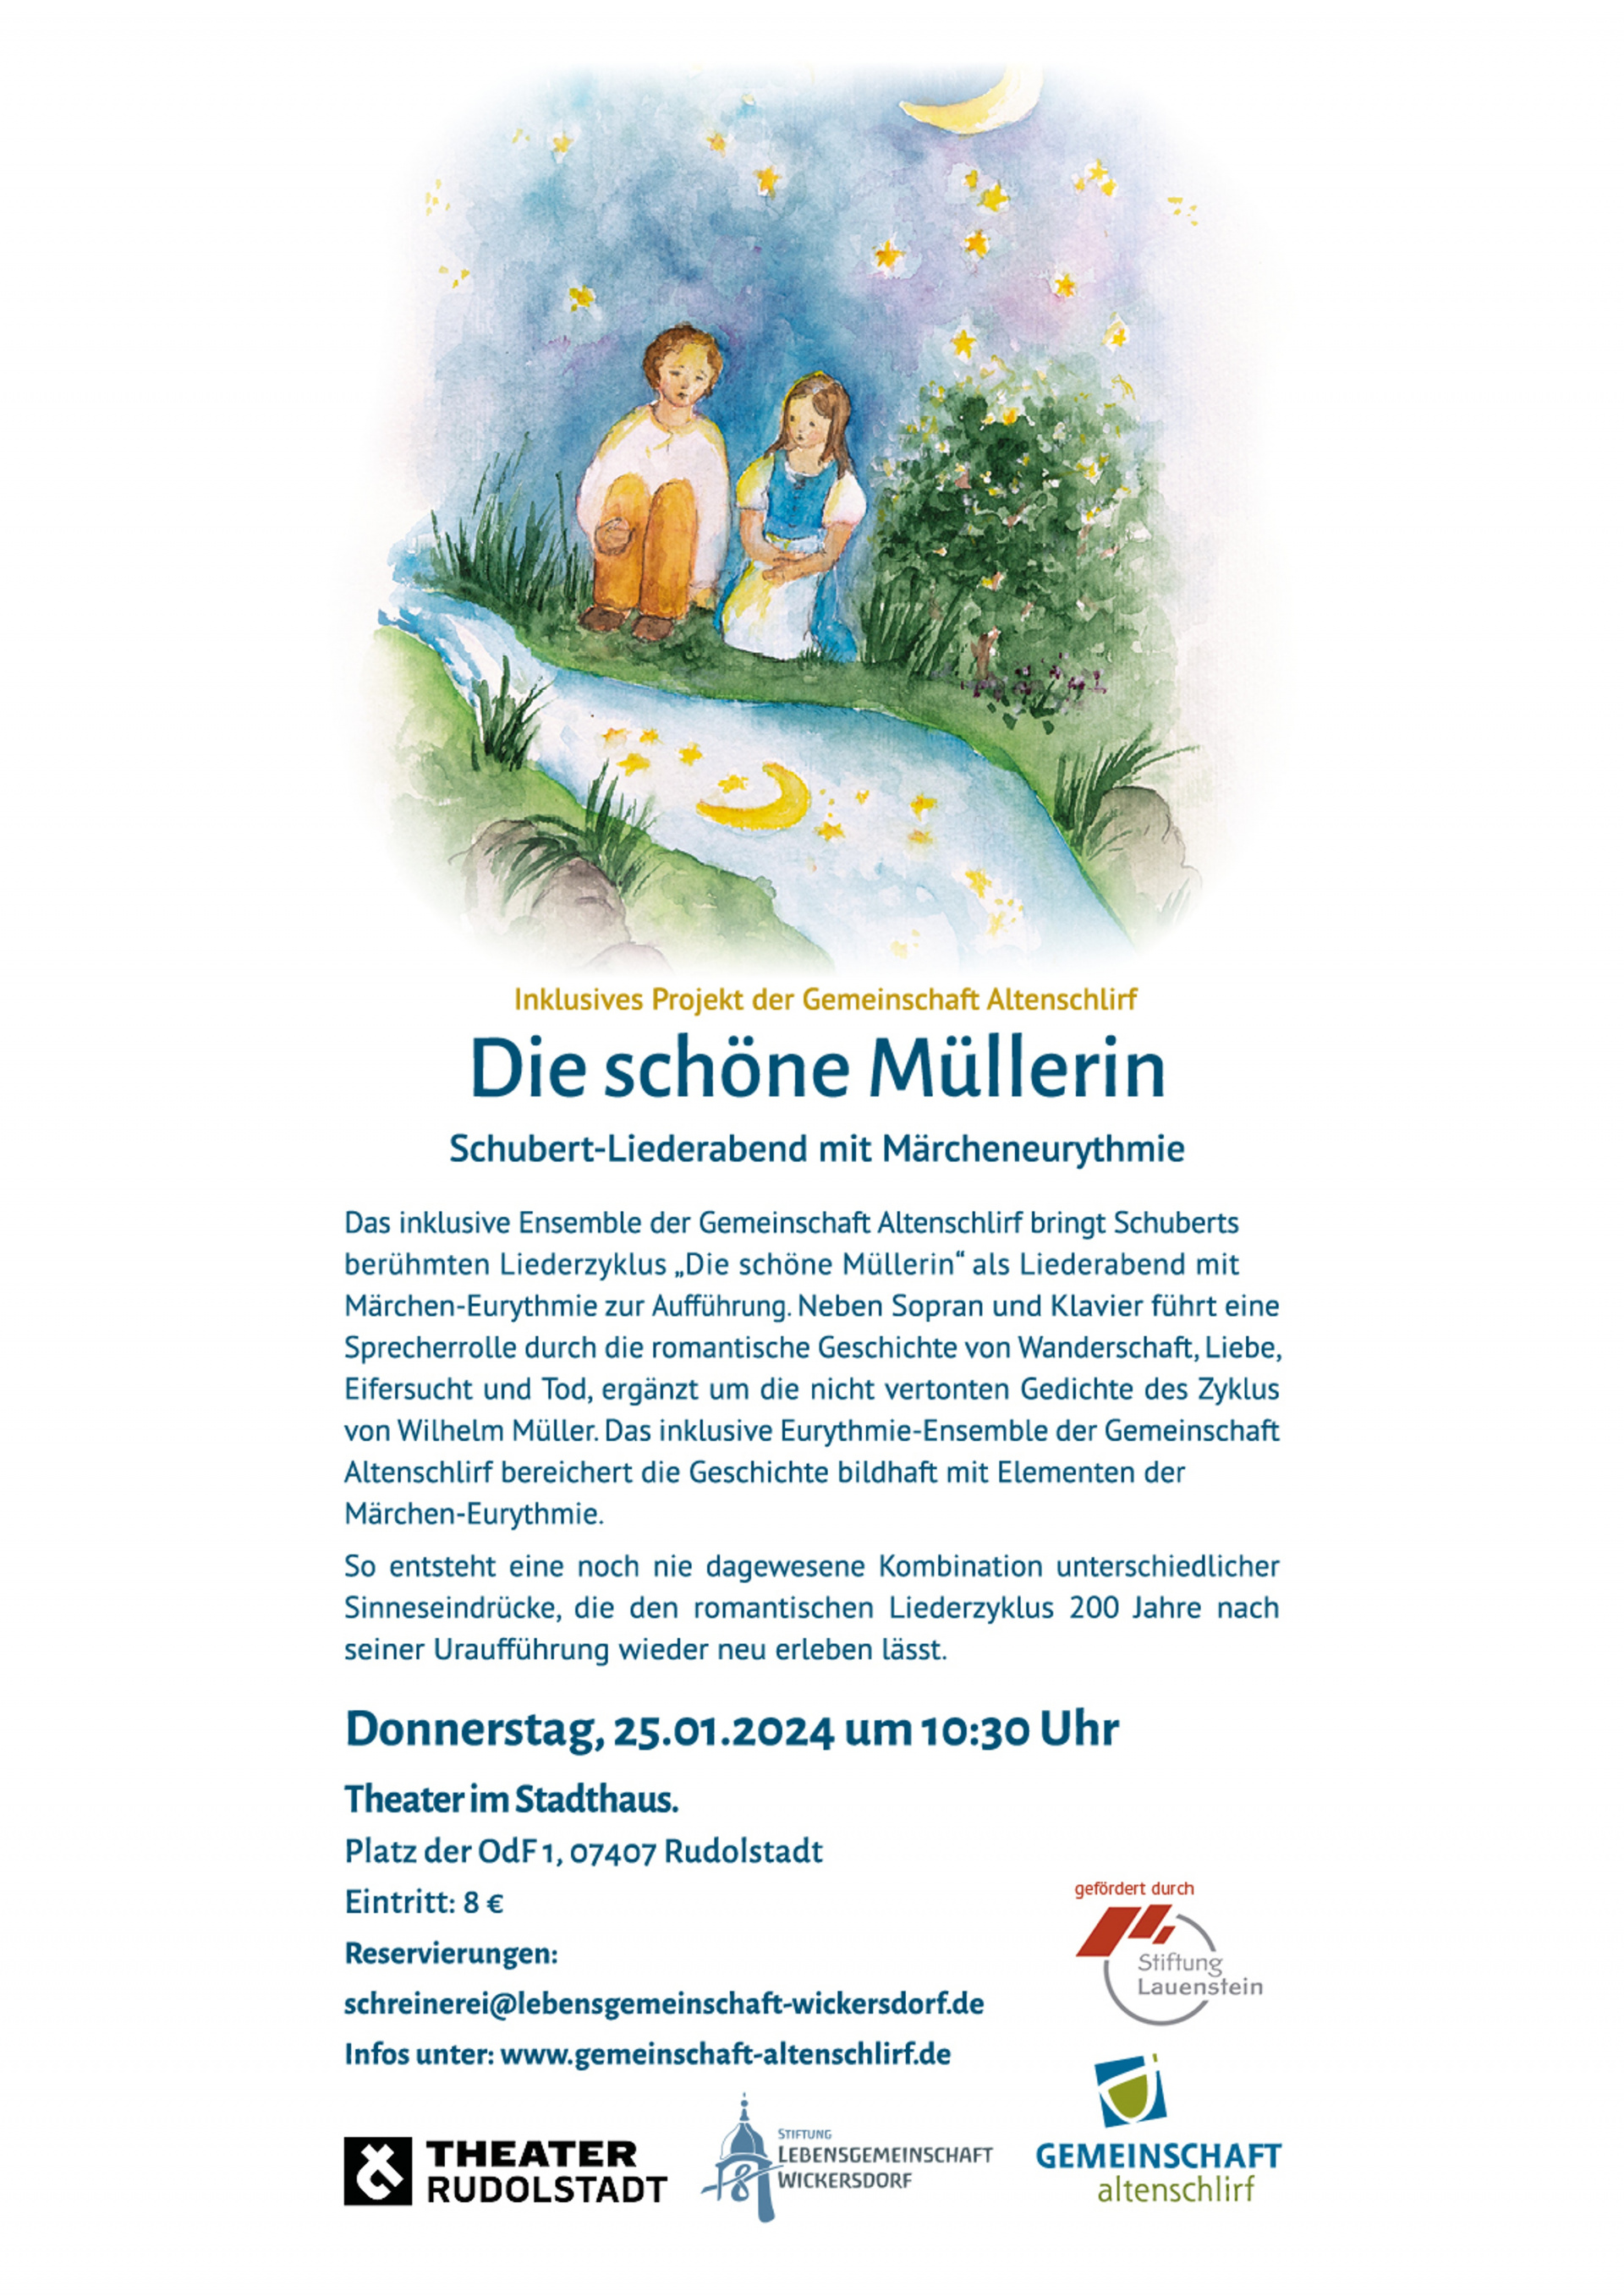 Einladung Schöne Müllerin 
© Einladung Schöne Müllerin